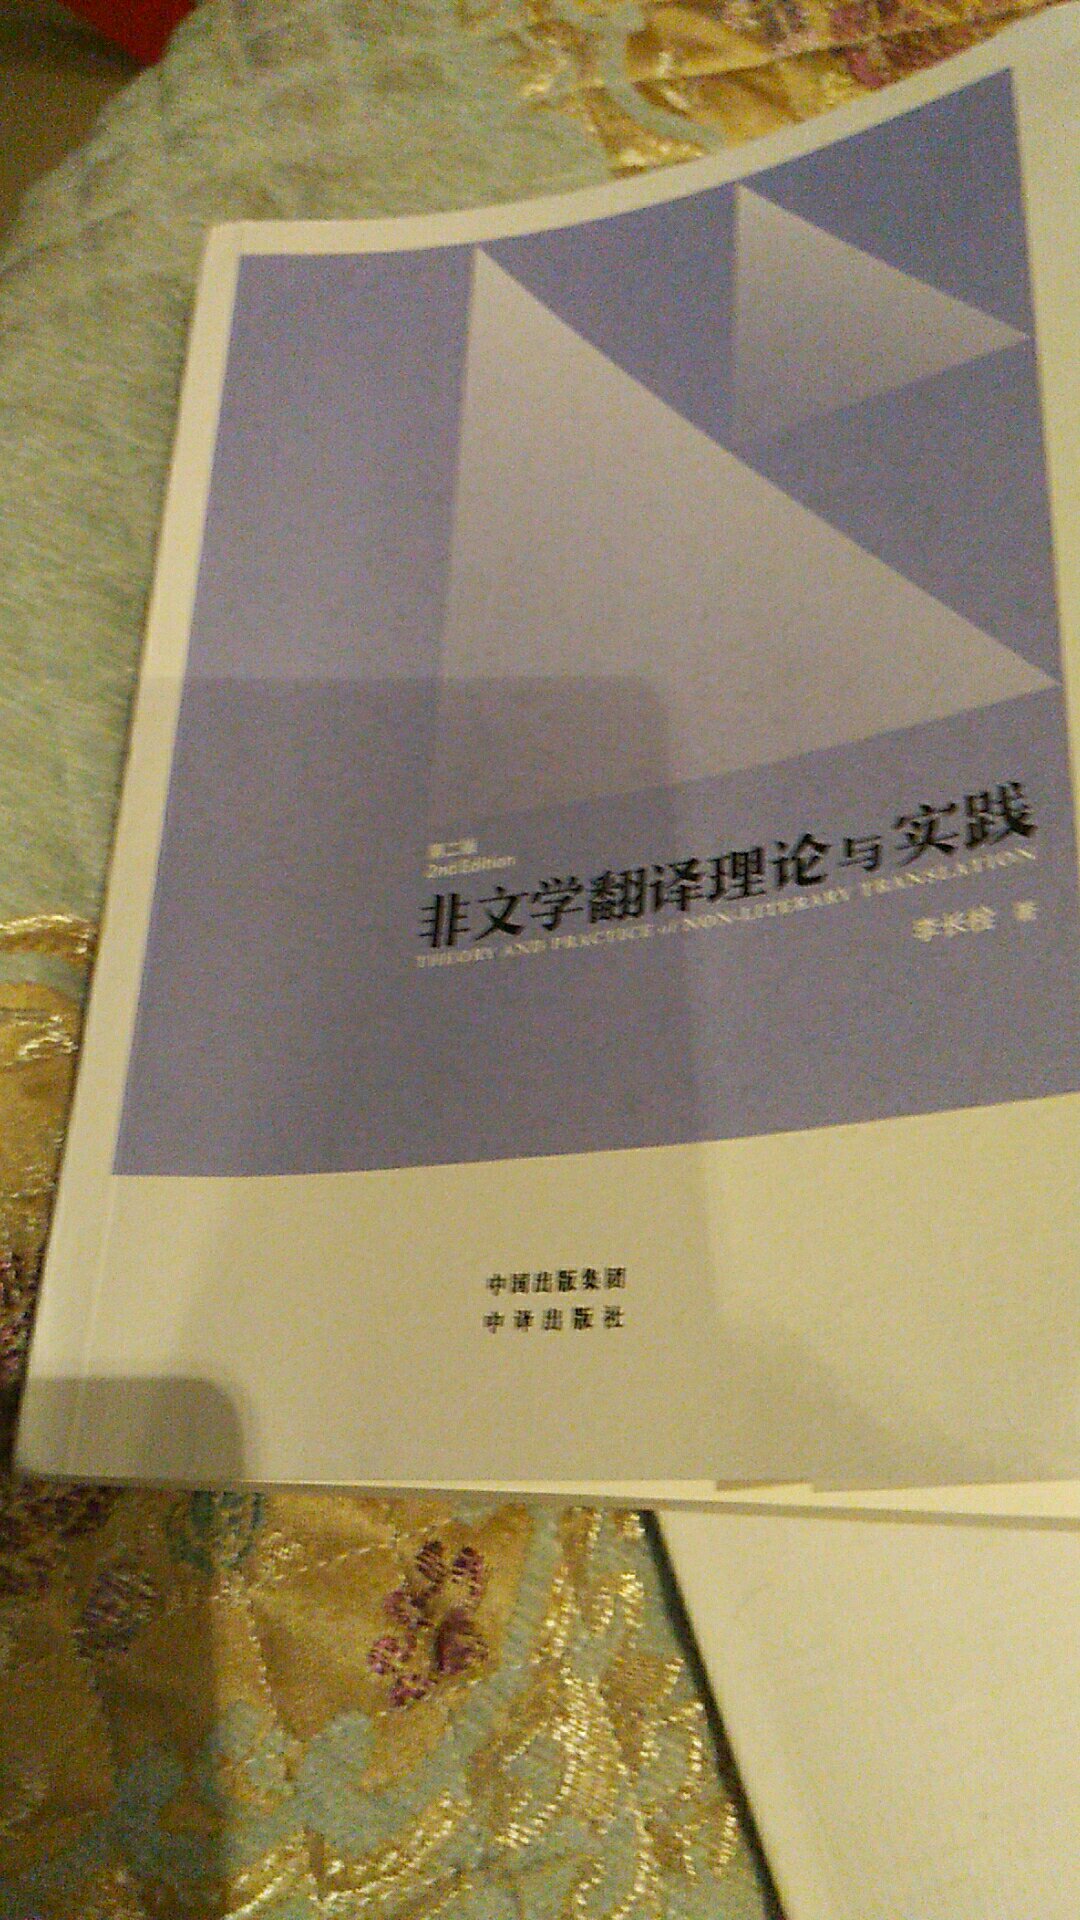 翻阅了部分章节。内容很实用，对于学习英汉翻译的同学很有帮助。